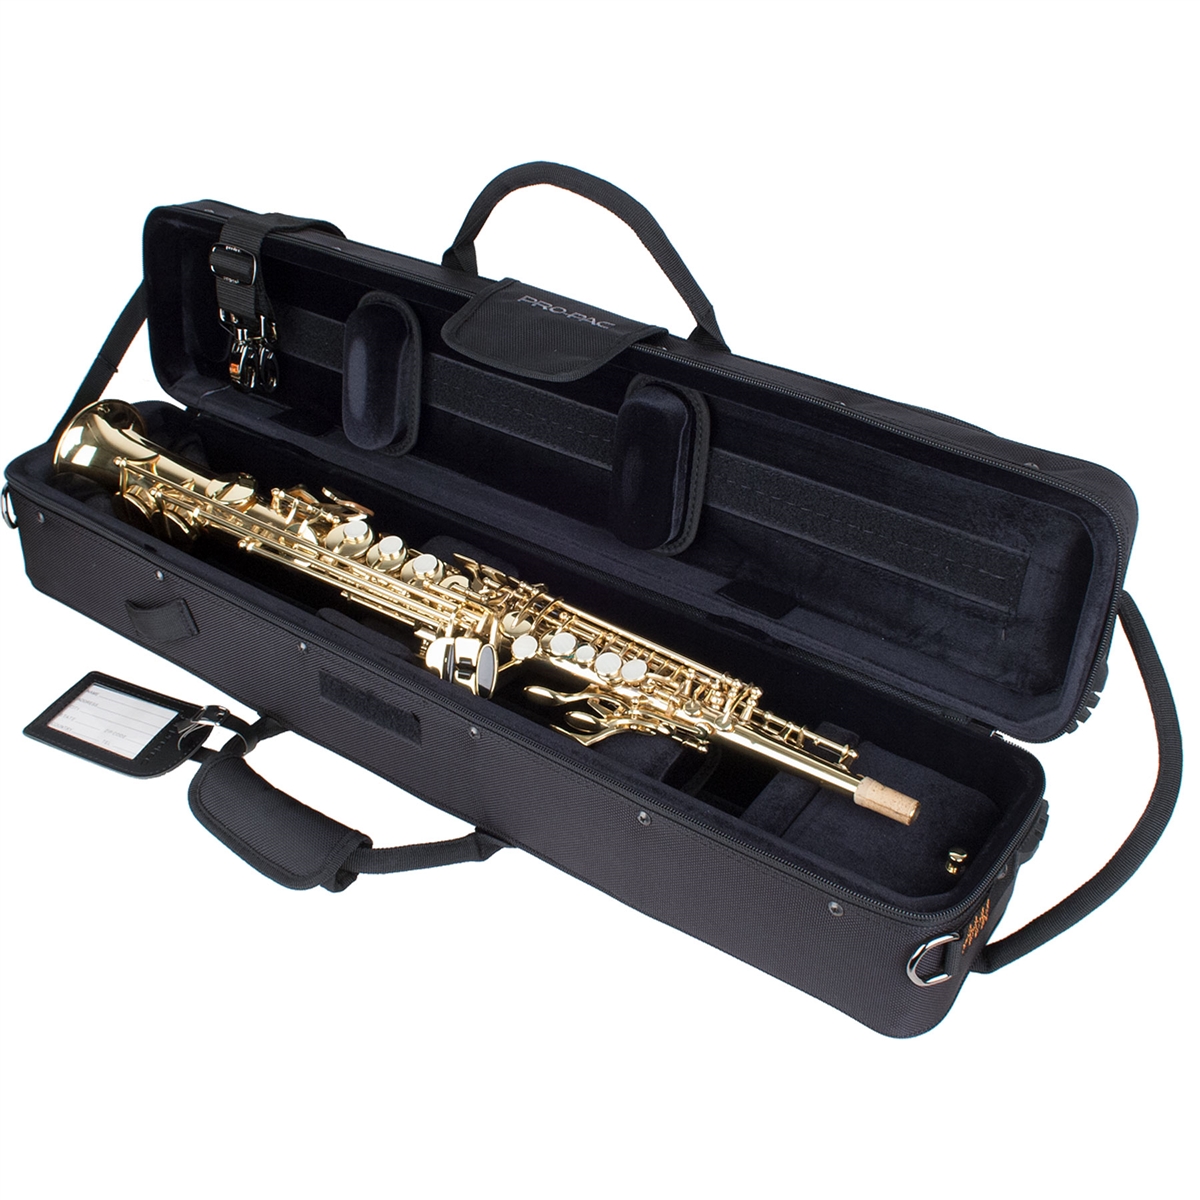 Protec PB310 Case for Soprano Sax